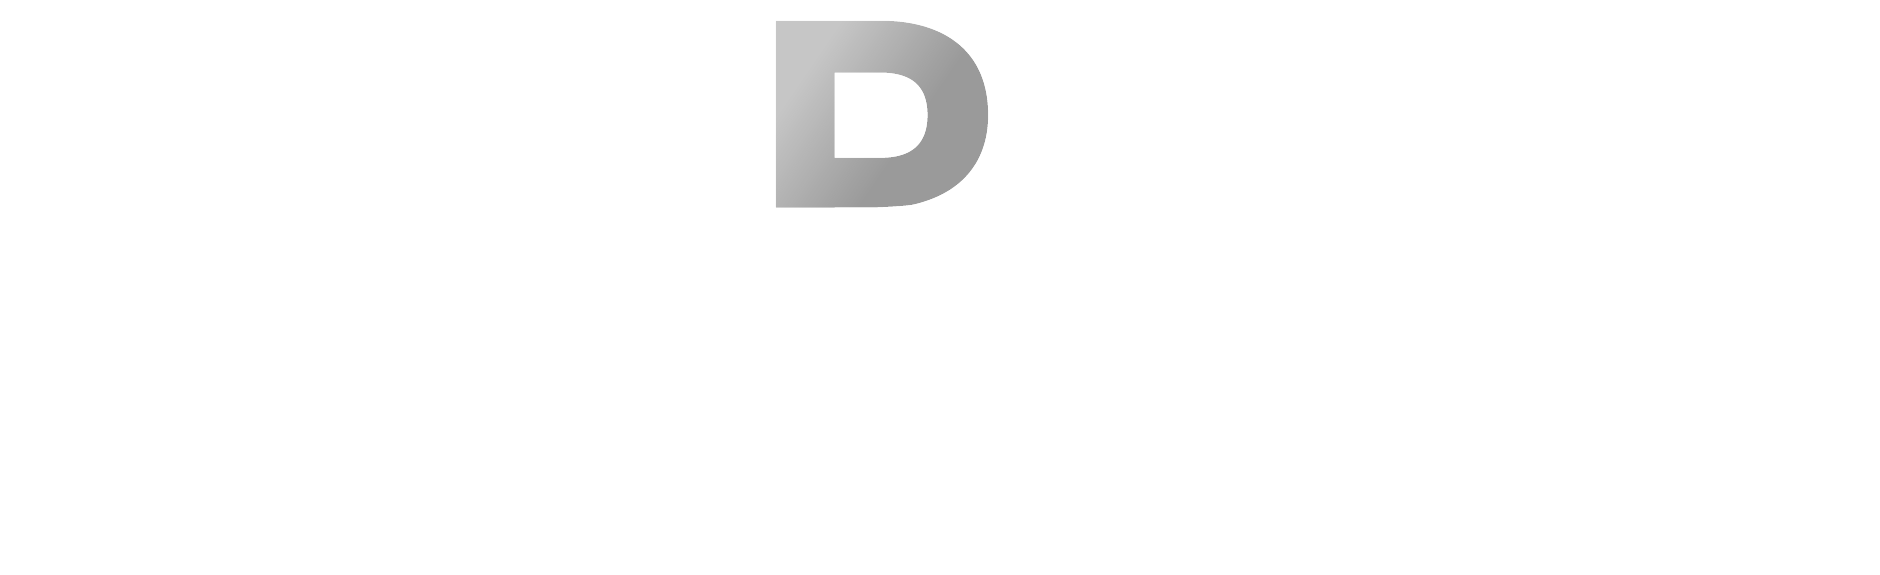 Starlite Media logo white